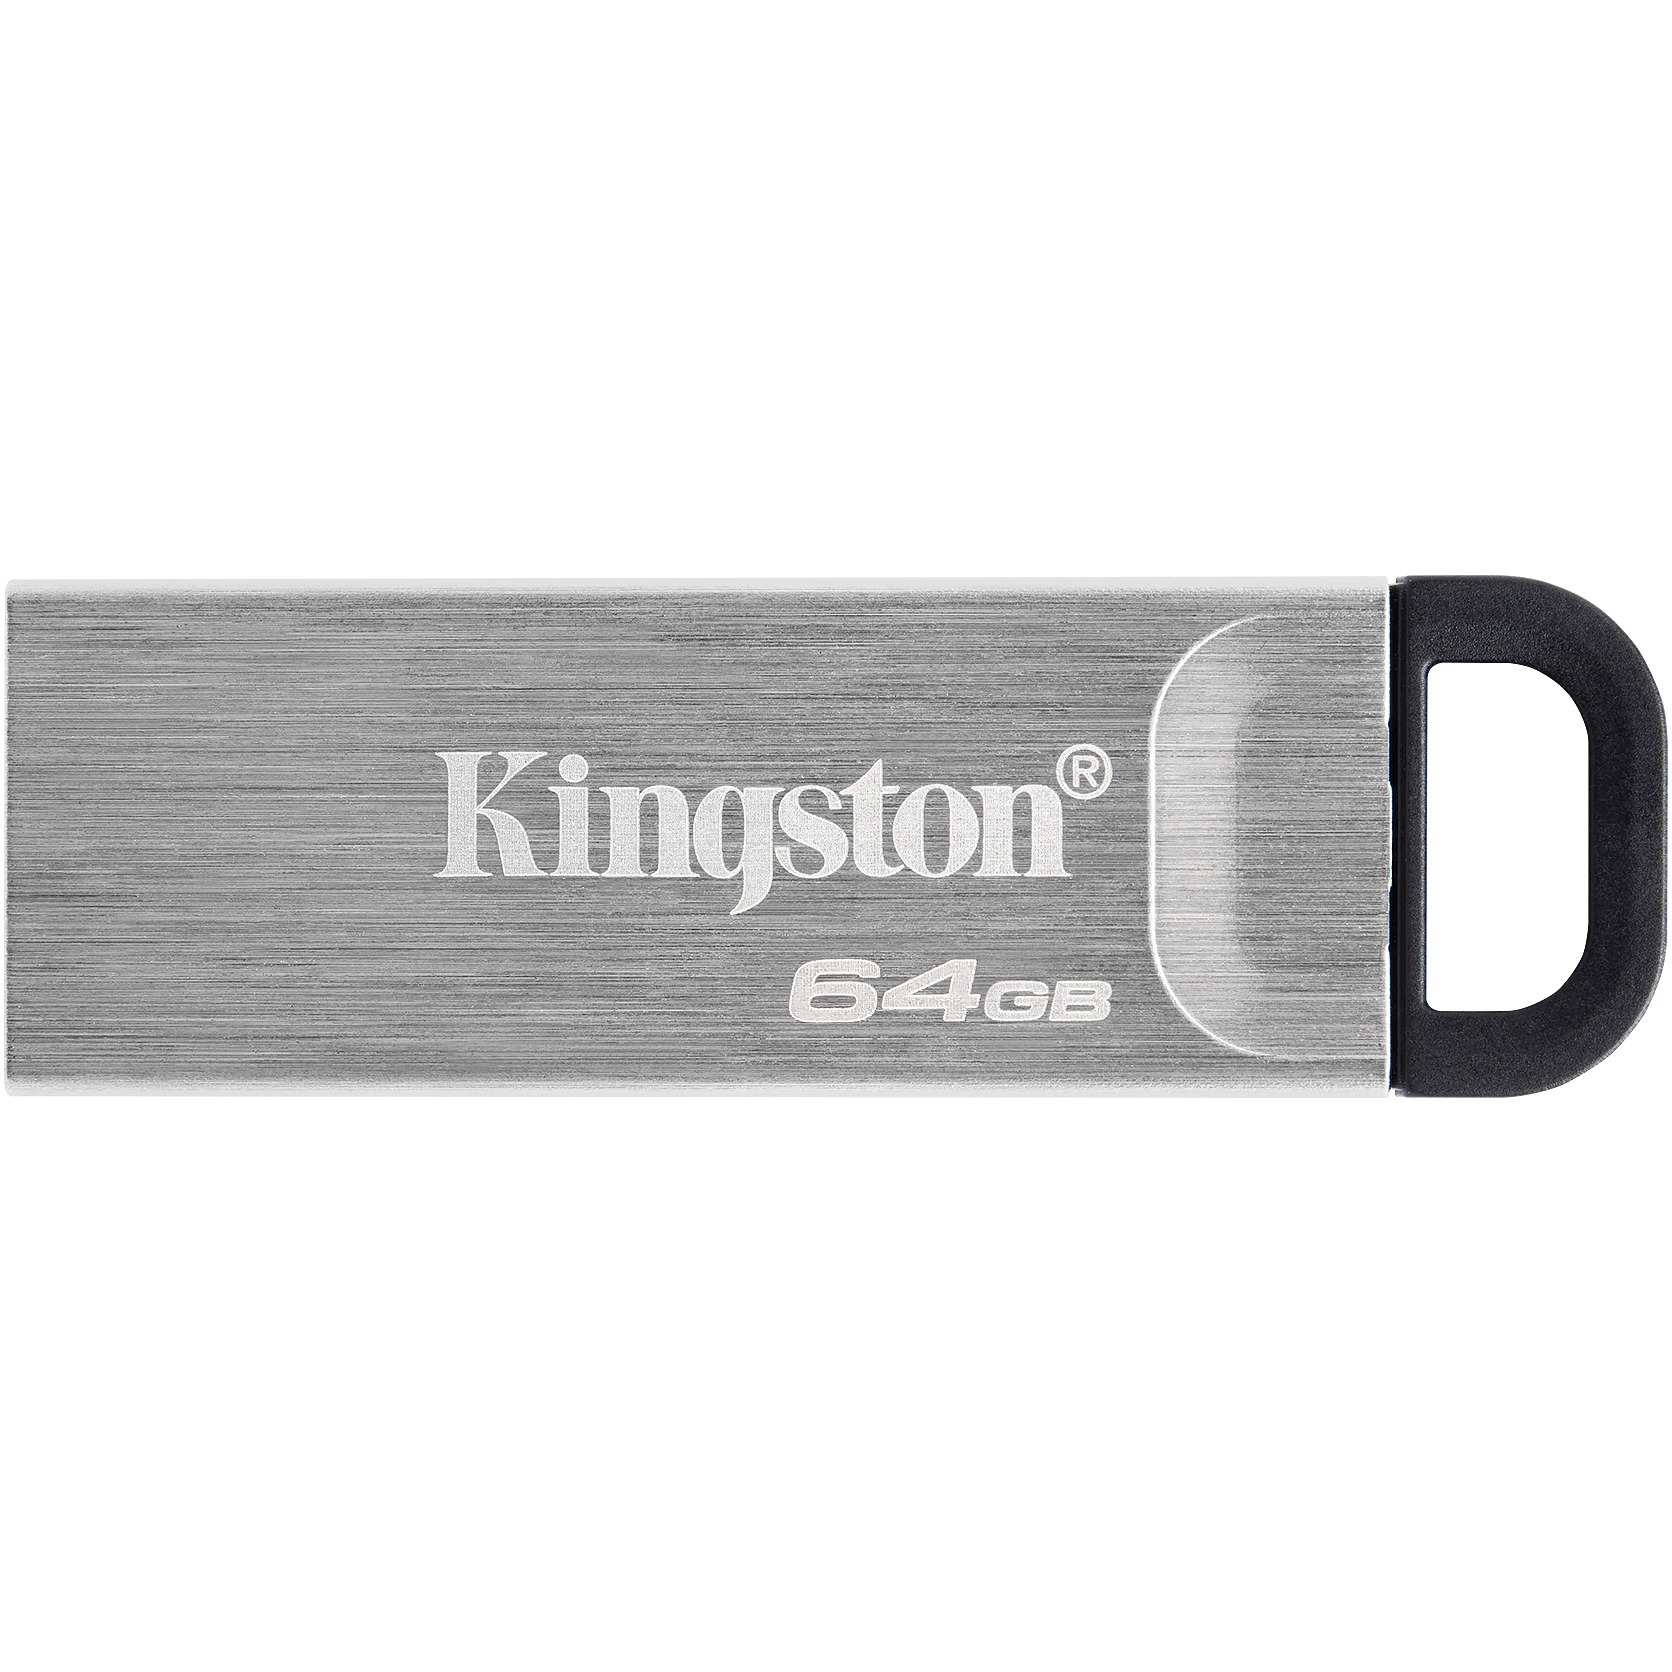 KINGSTON-DTKN64GB